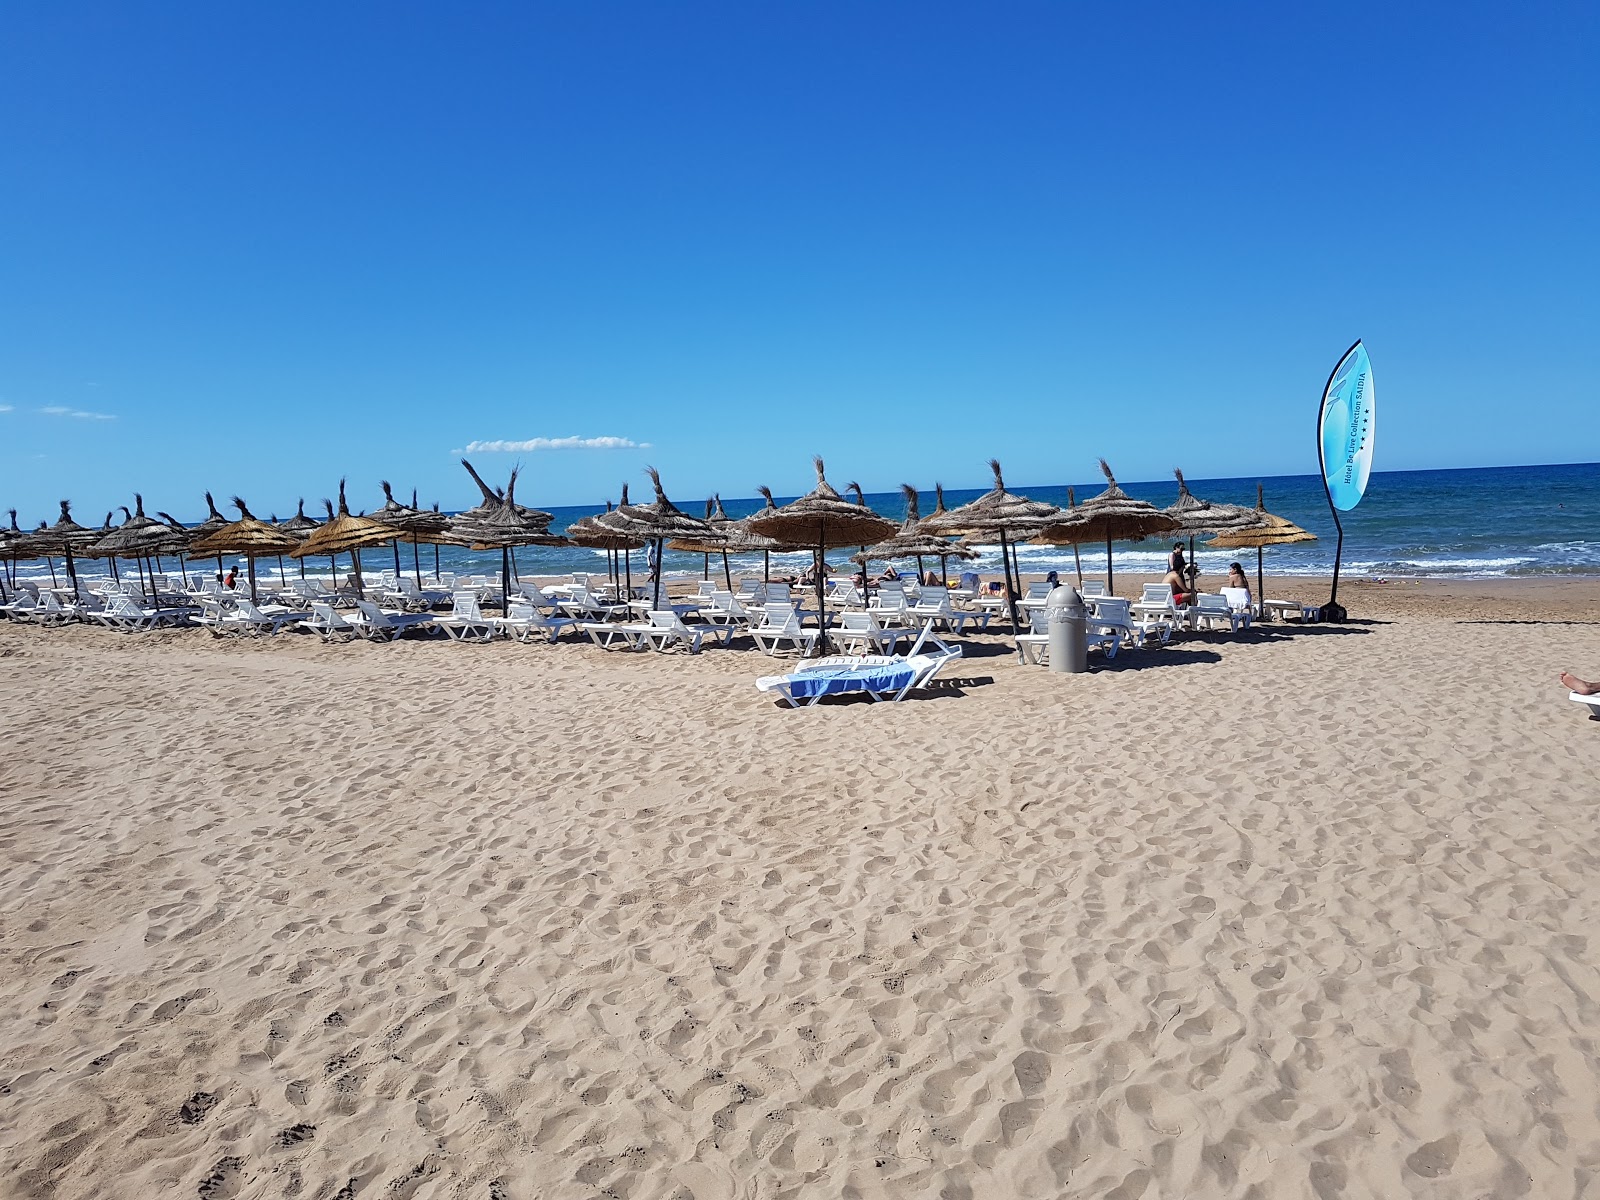 Photo de Saidia beach - endroit populaire parmi les connaisseurs de la détente